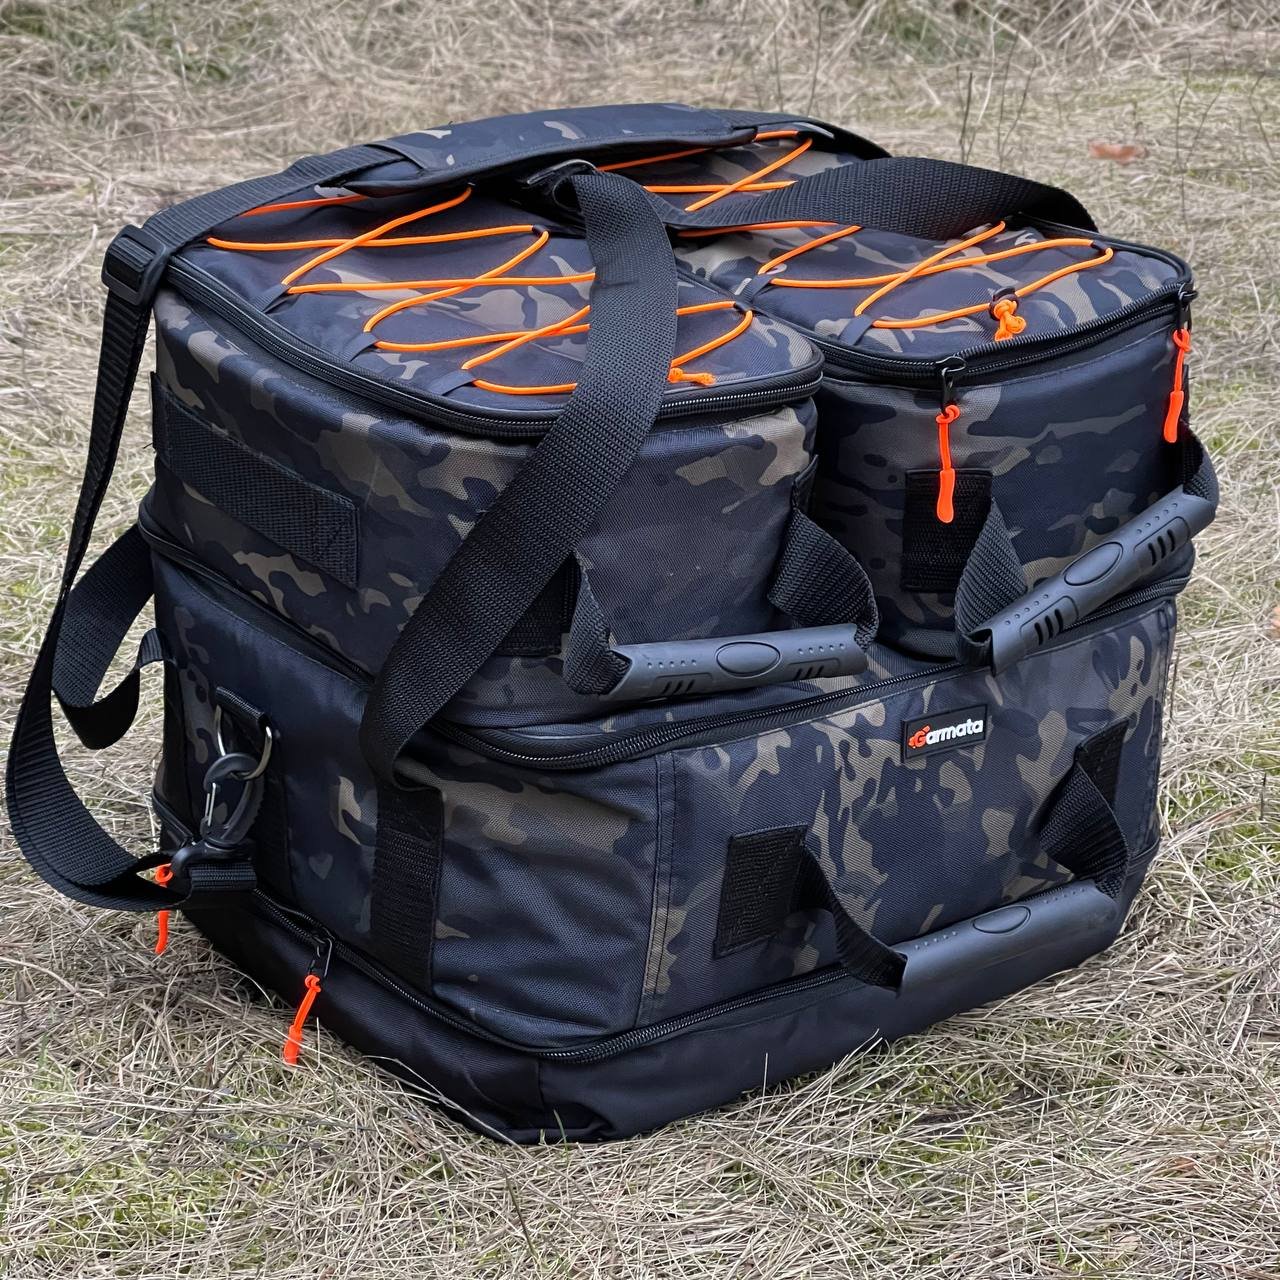 Рыболовная сумка конструктор GARMATA Profish 3в1. Для фидерной и классической карповой рыбалки. Multicam Black.